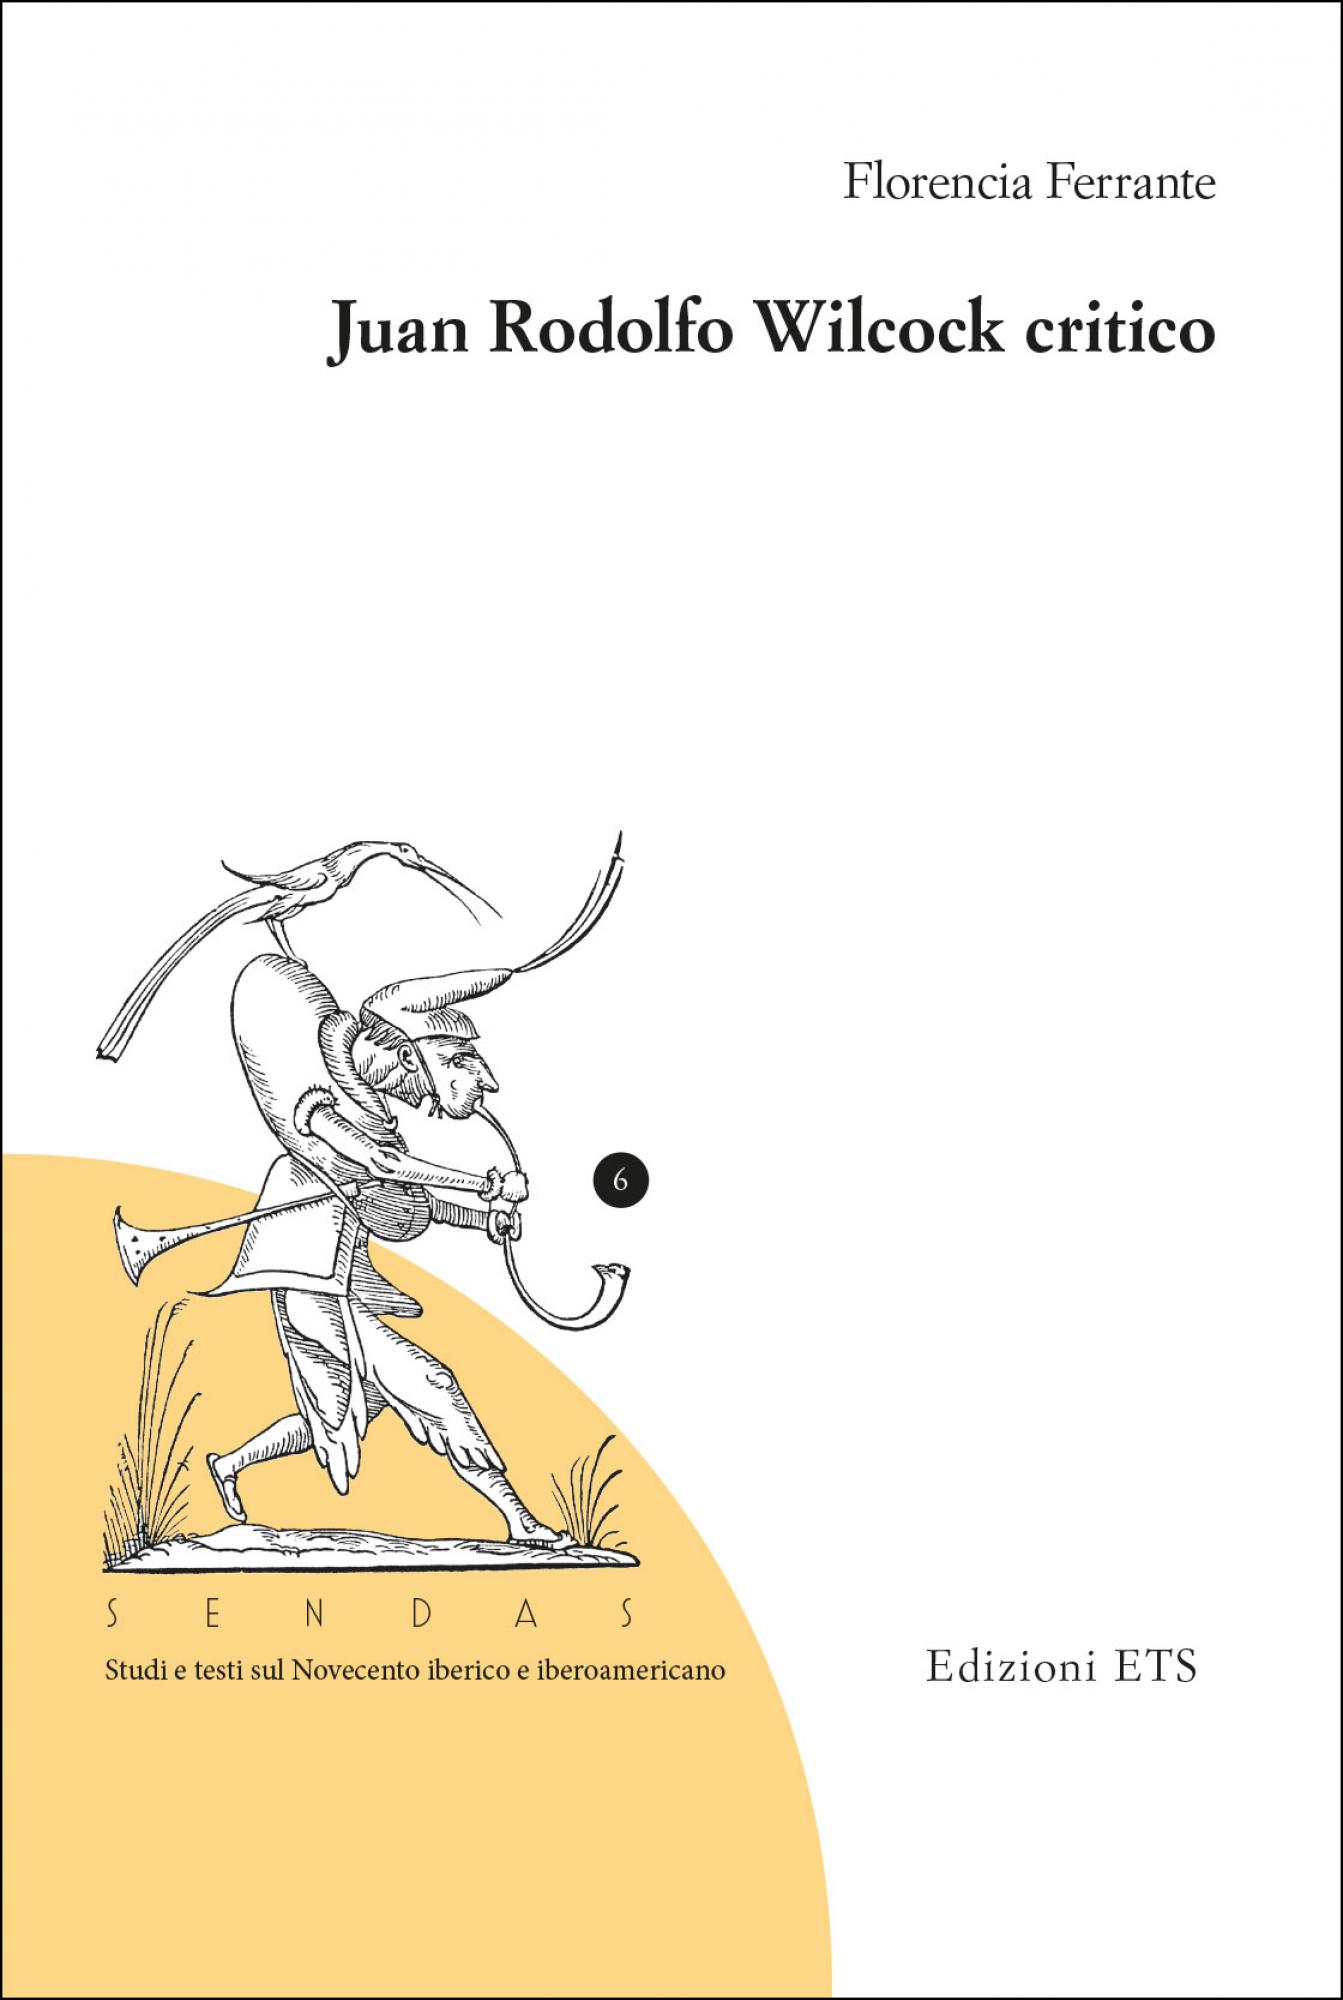 Juan Rodolfo Wilcock critico